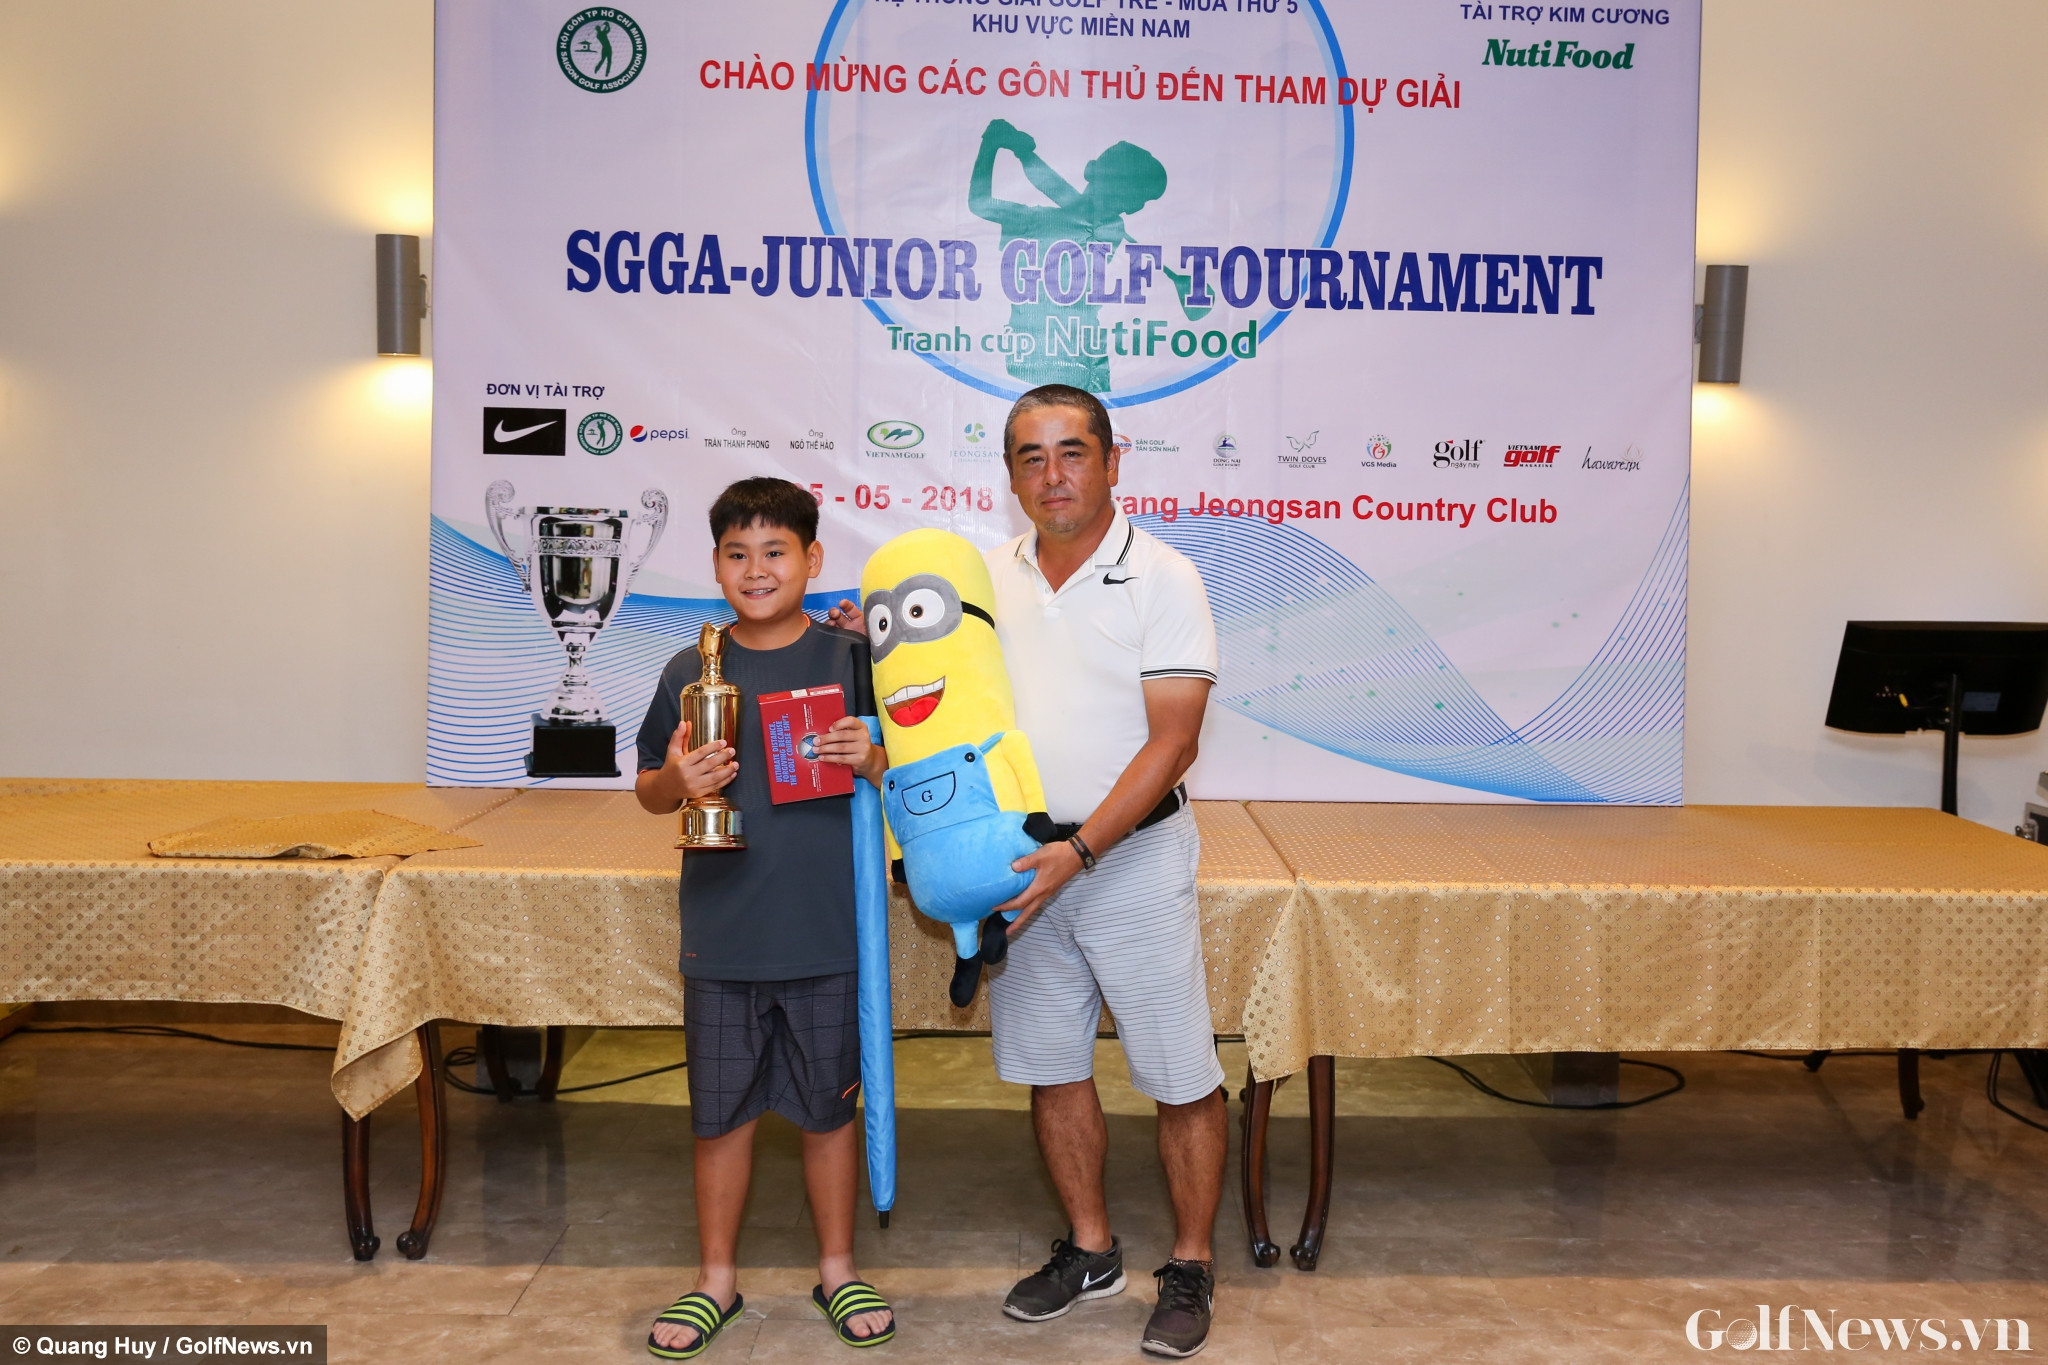 Đặng Minh Anh xuất sắc giành chức vô địch SGGA Junior Golf Tournament